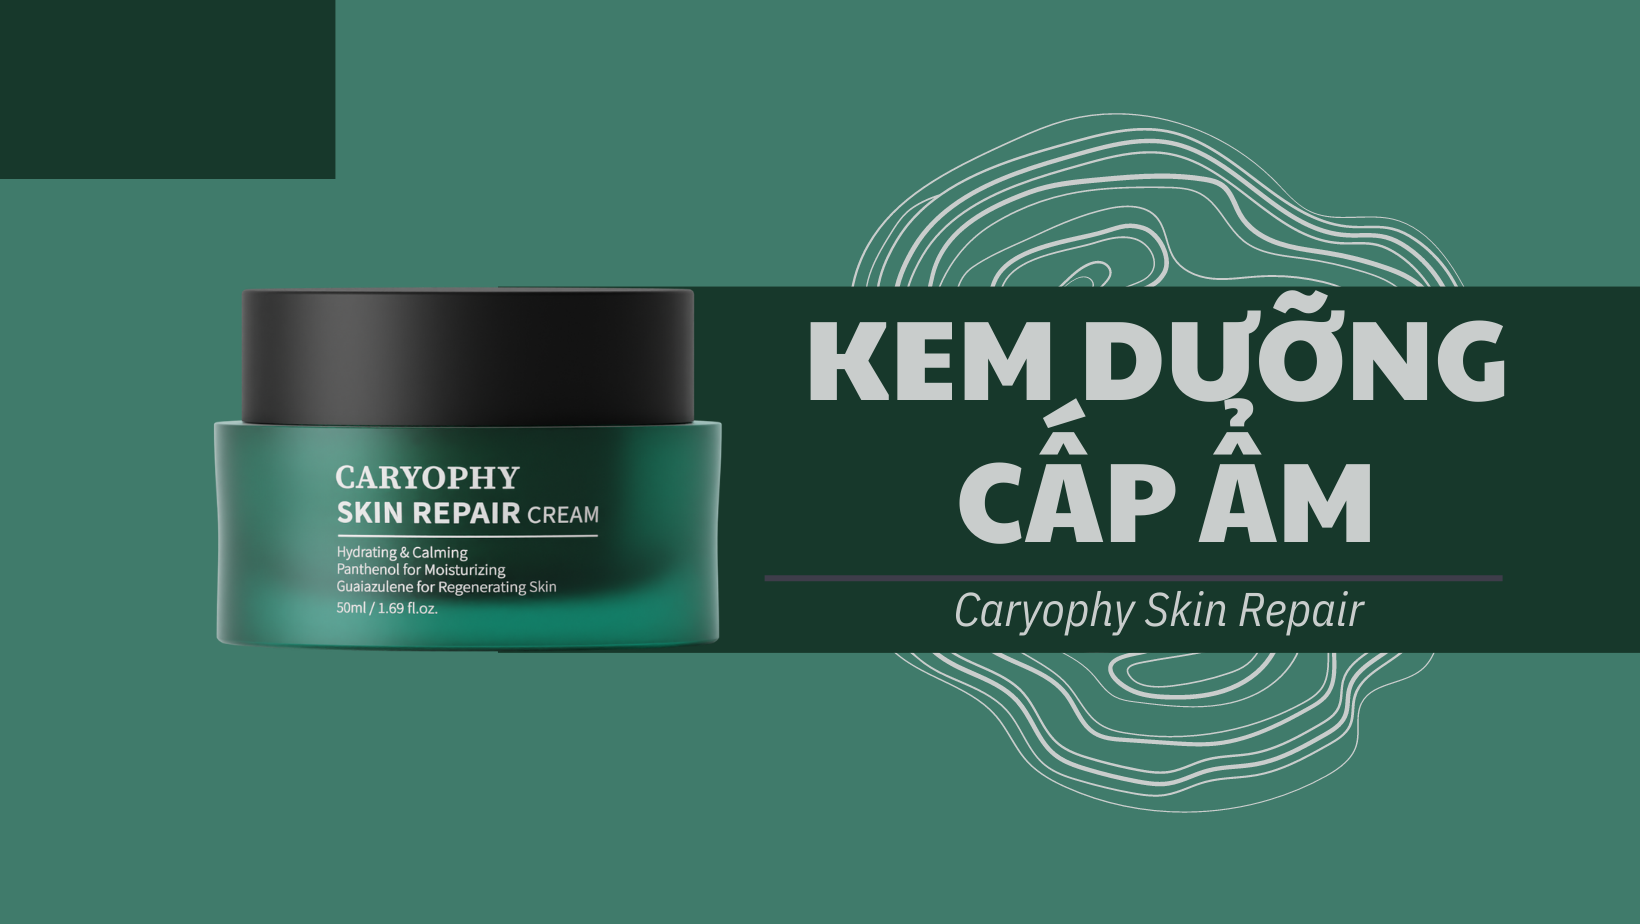 kem-duong-cap-am-caryophy-skin-repair